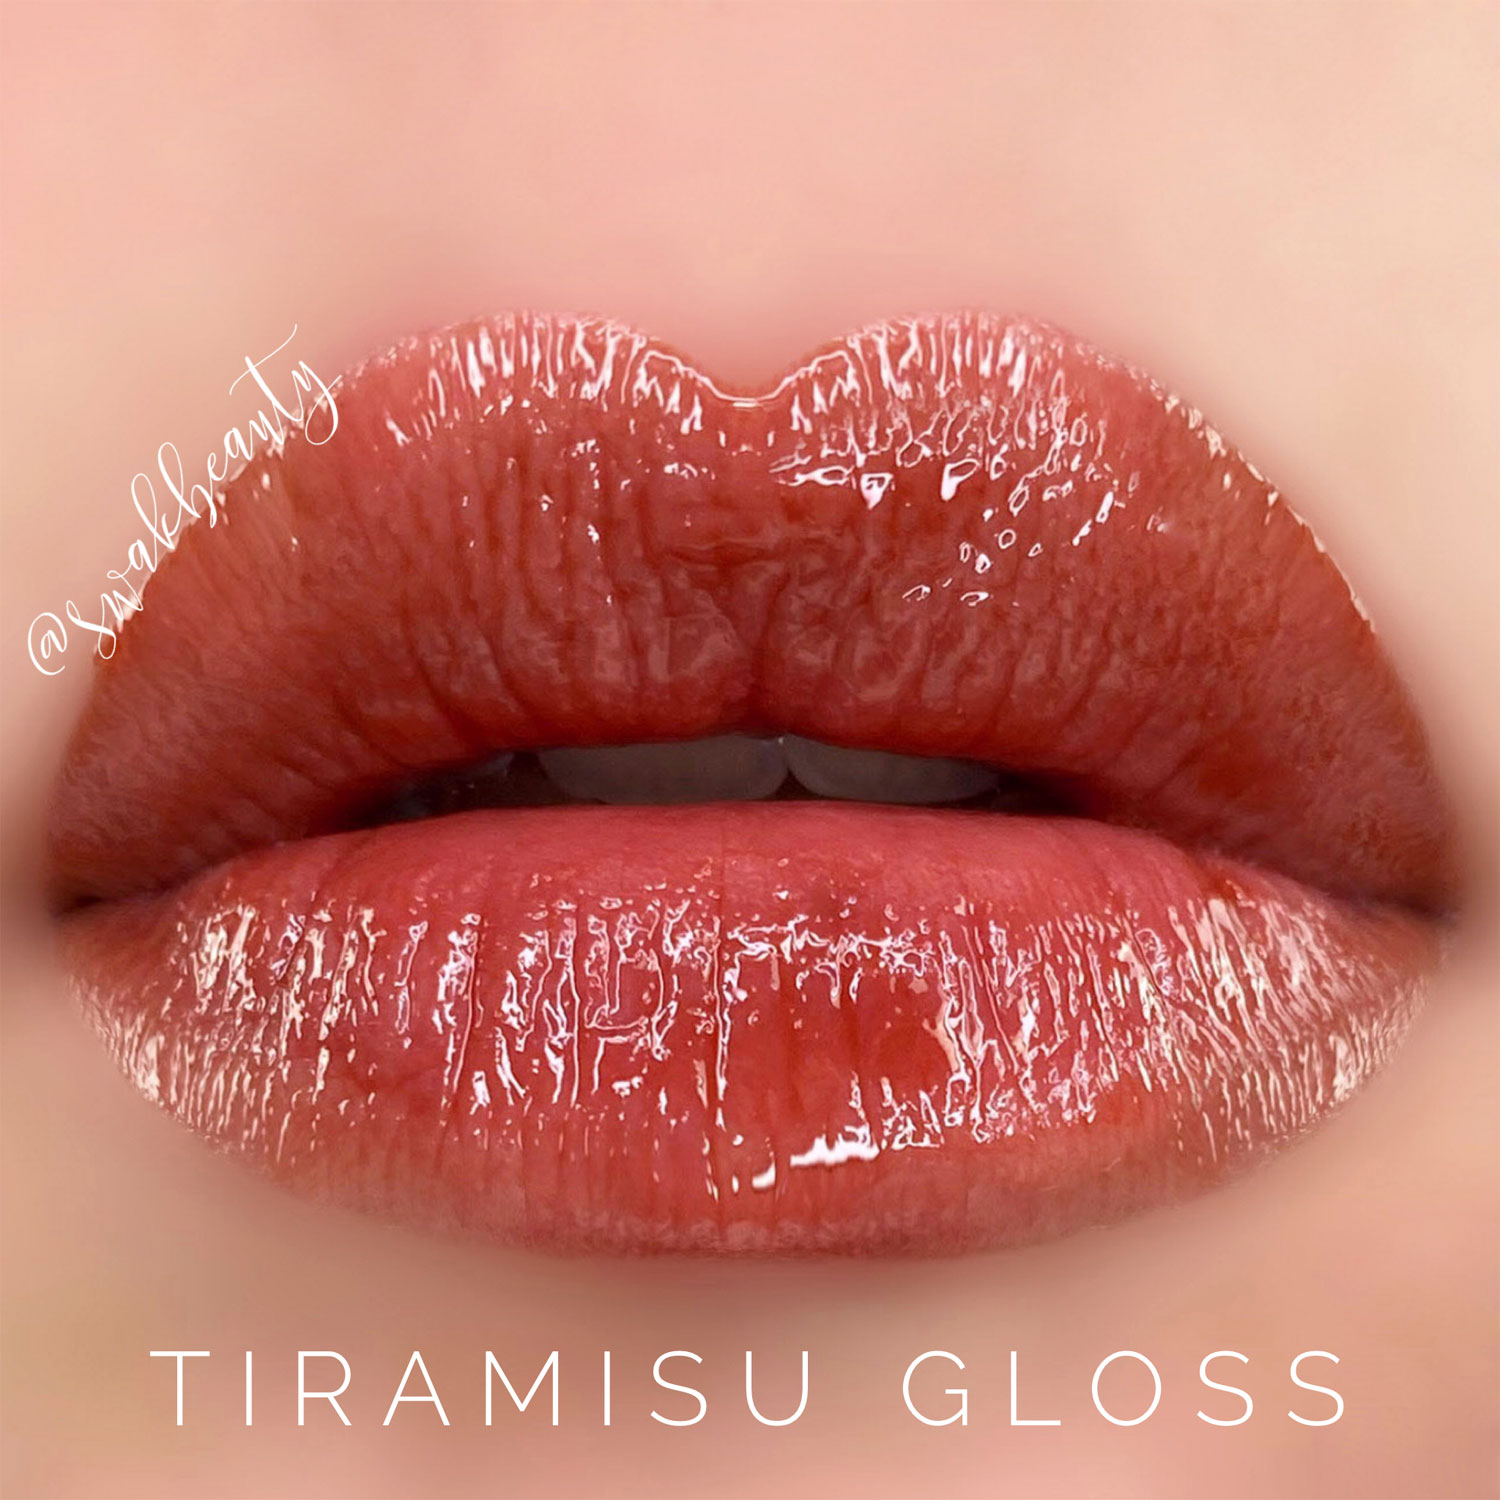 Lipsense Tiramisu Gloss Limited Edition Swakbeauty Com